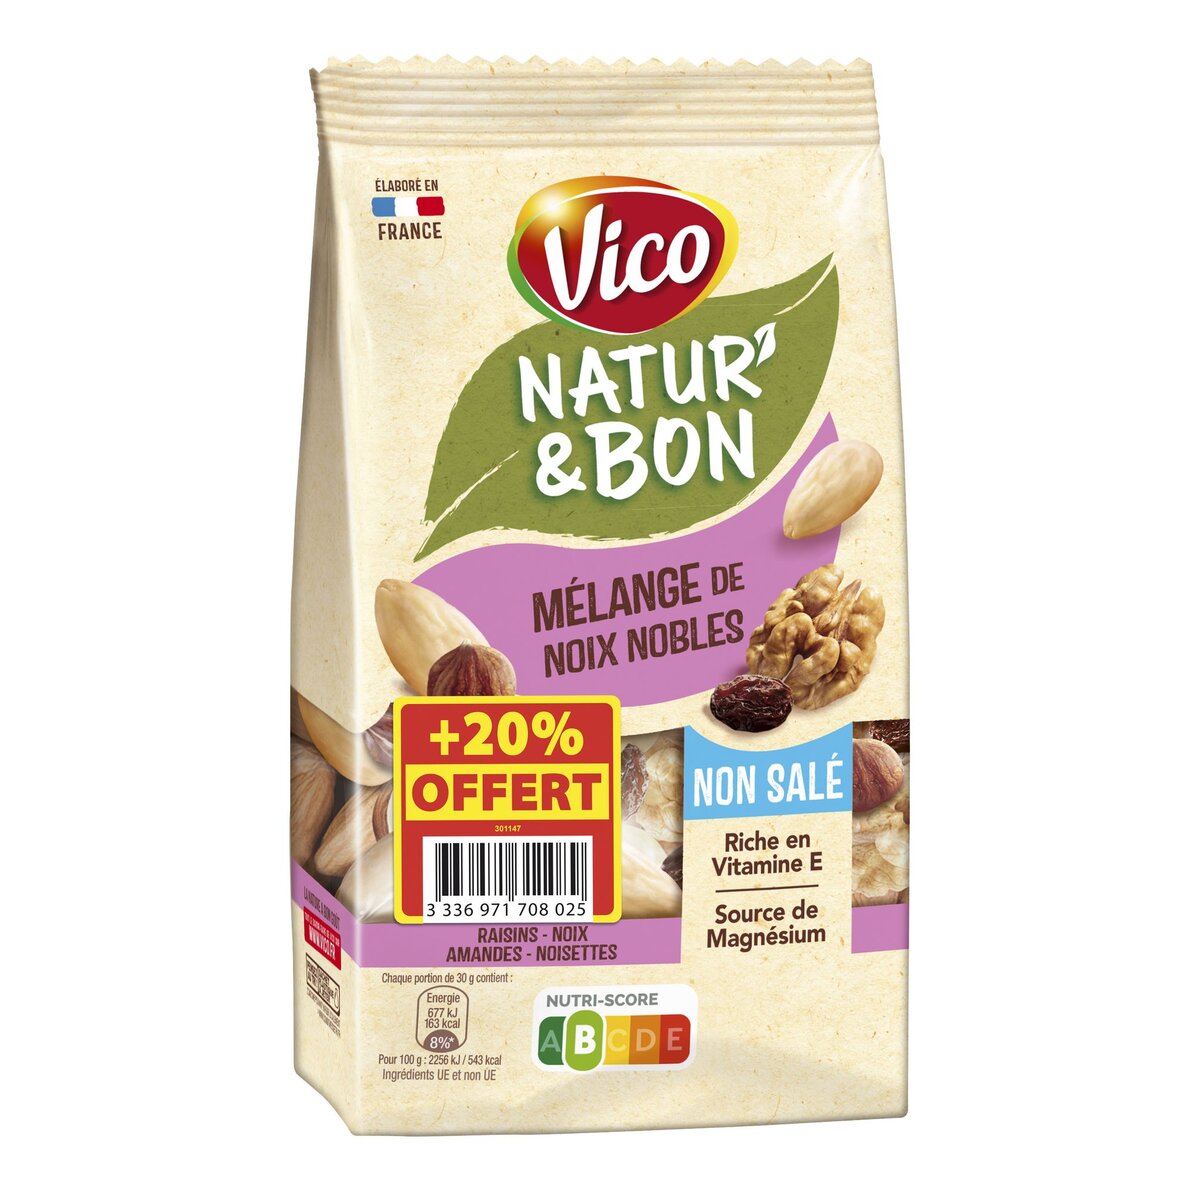 VICO Natur'&bon mélange de noix nobles non salé 200g+ 20% offert